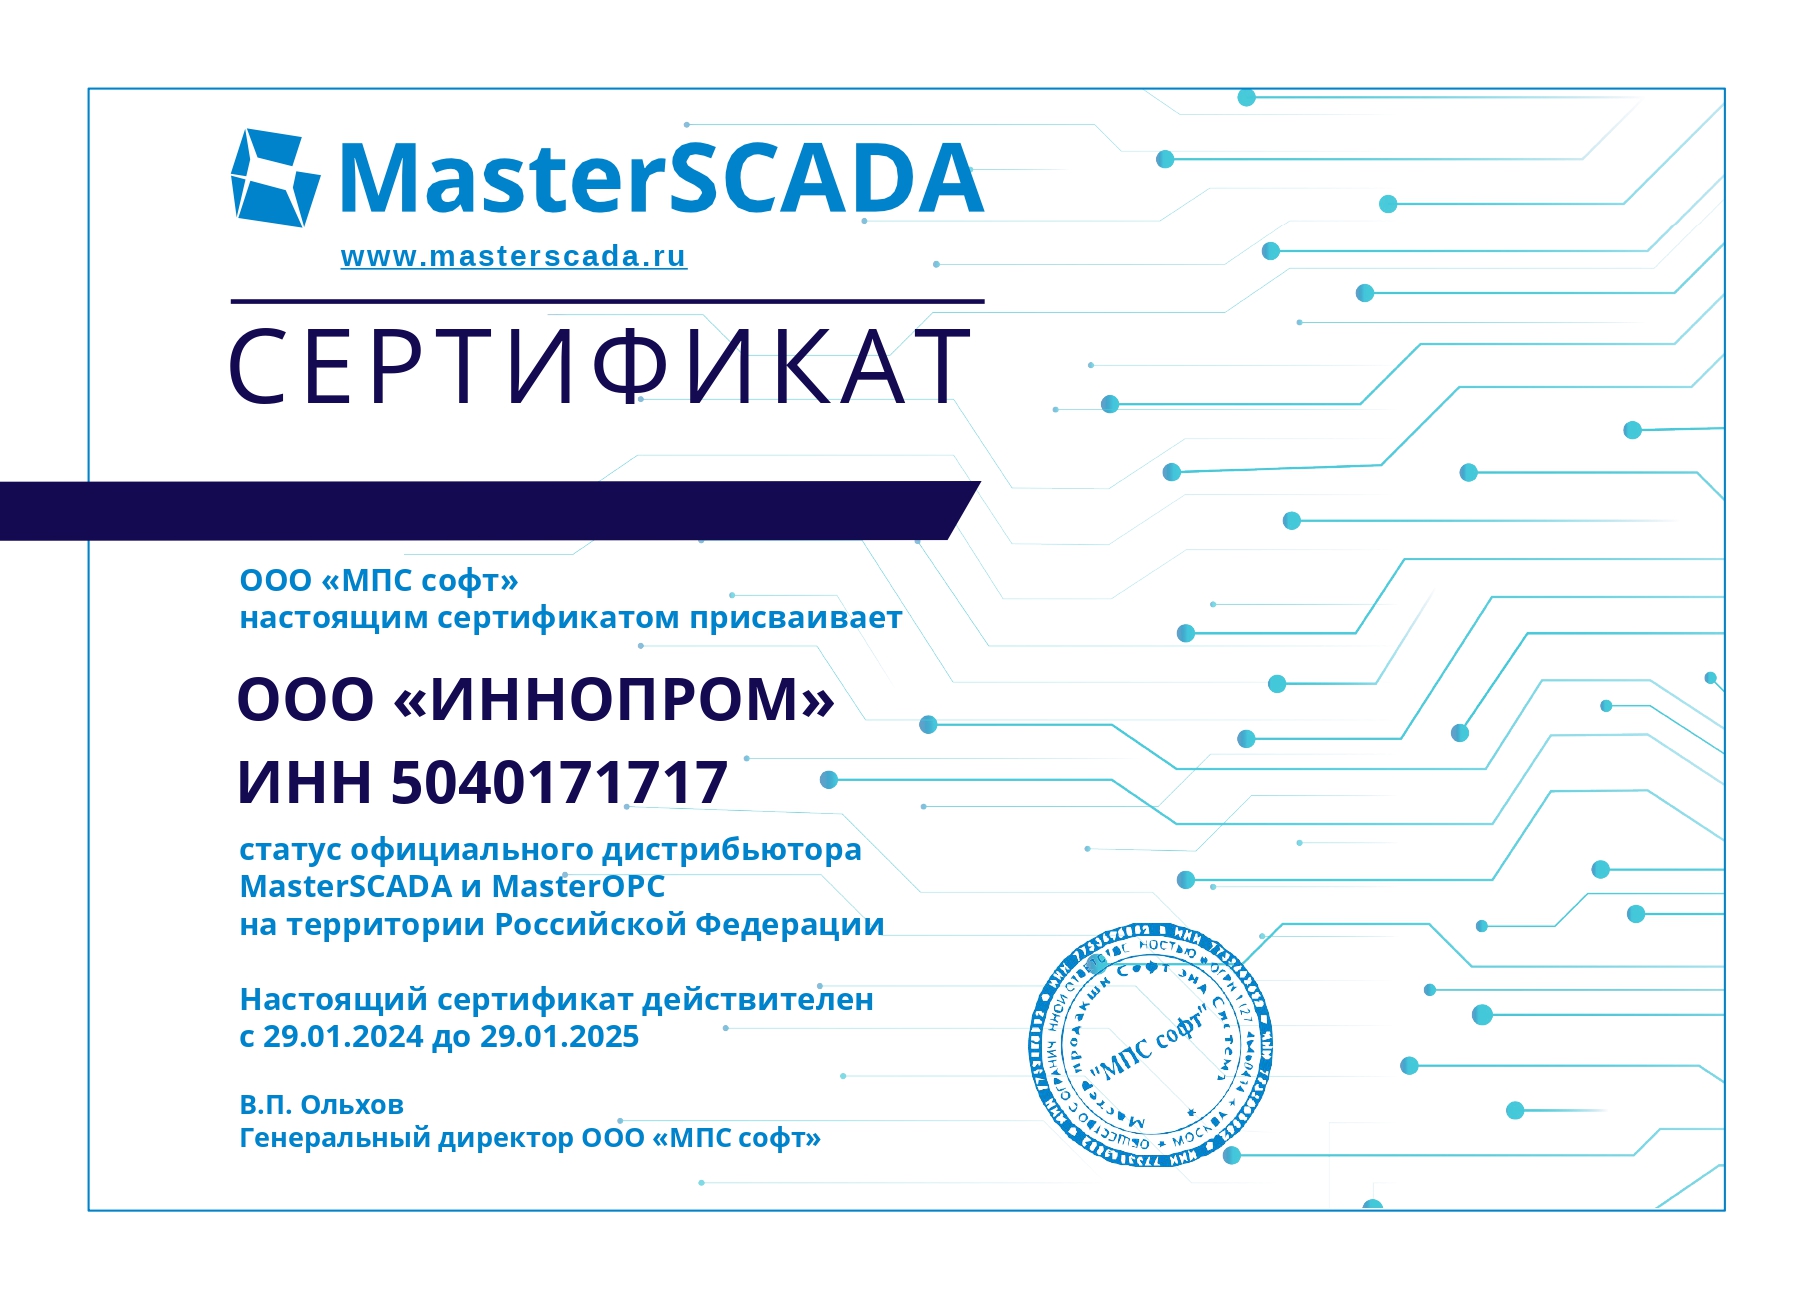 Компания ООО «ИННОПРОМ» получила статус официального дистрибьютора MasterSCADA и MasterOPC на территории Российской Федерации